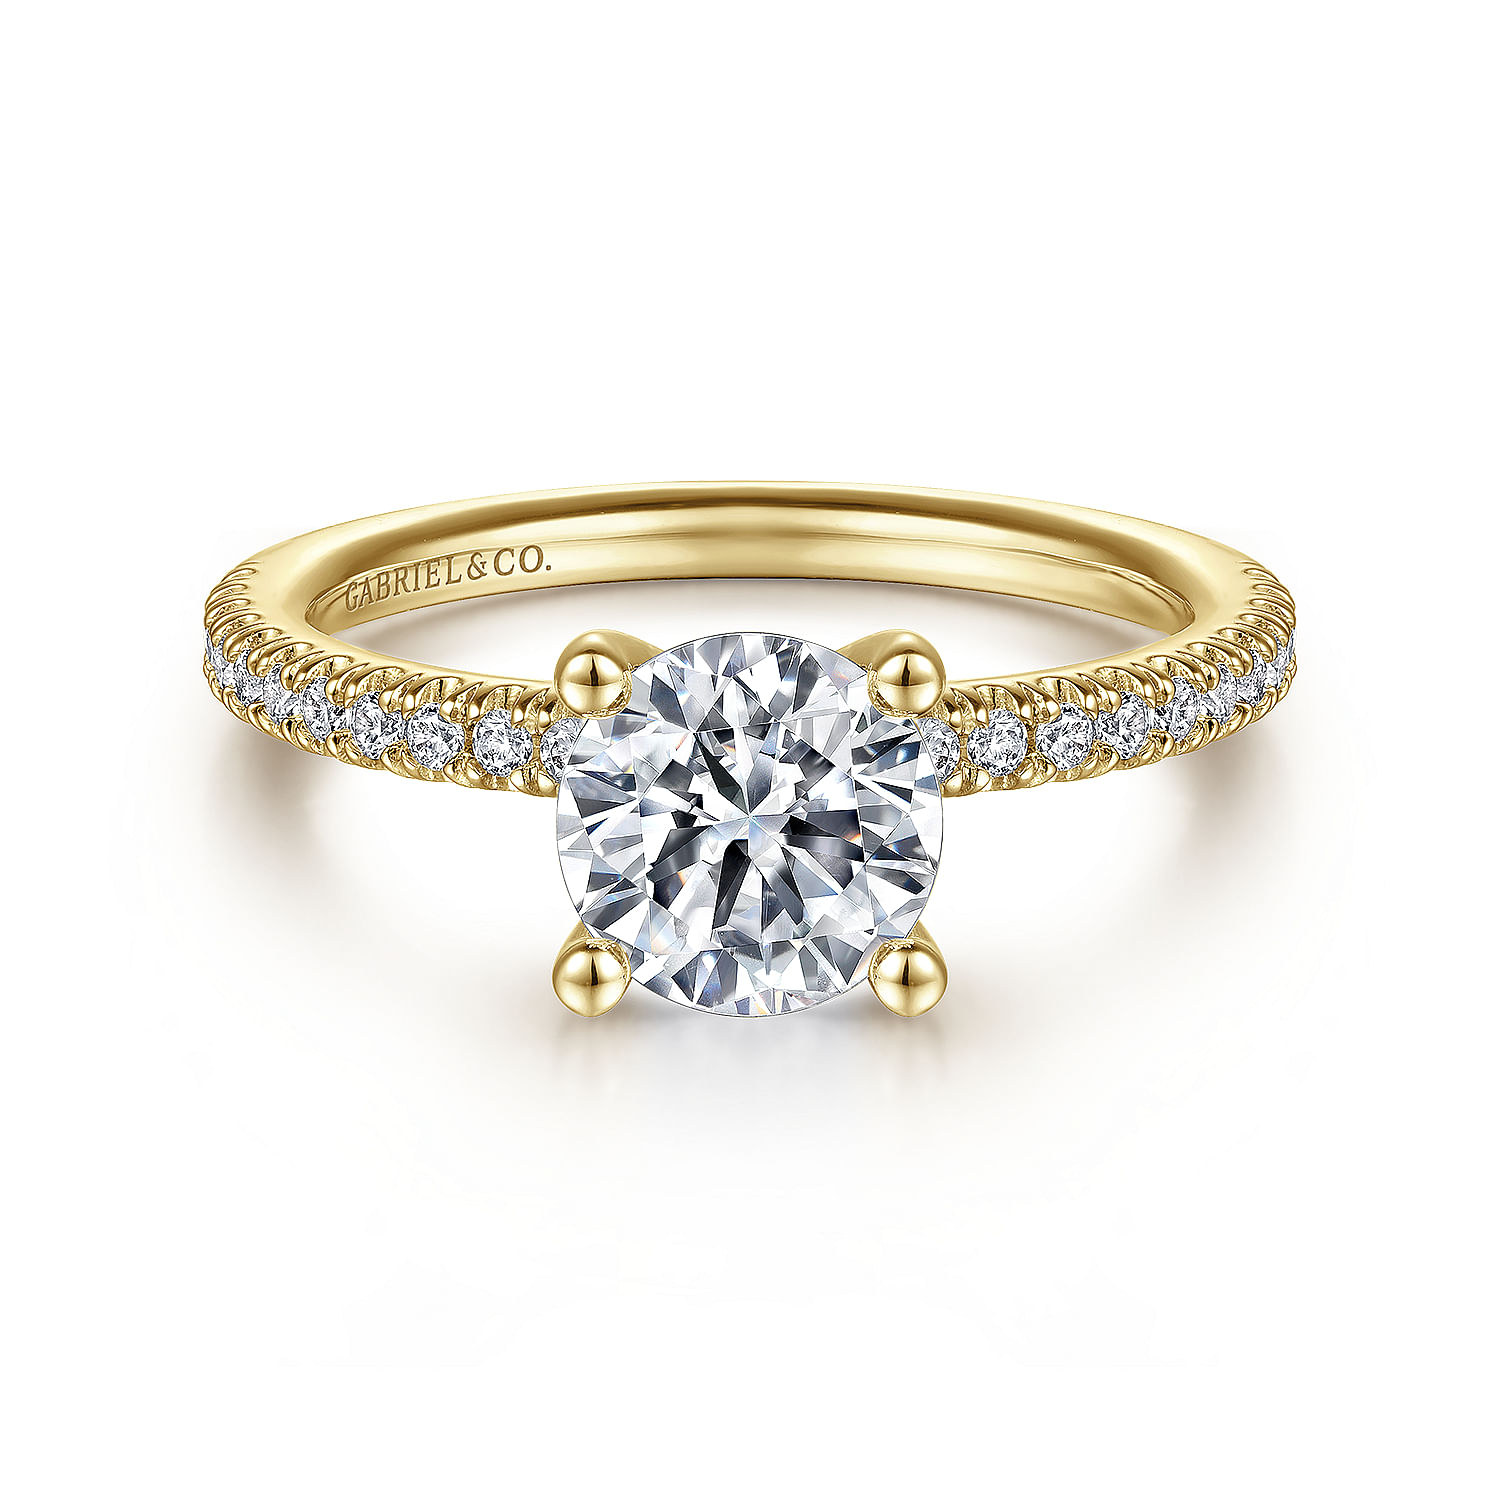 Serenity - 14K Yellow Gold Round Diamond Engagement Ring